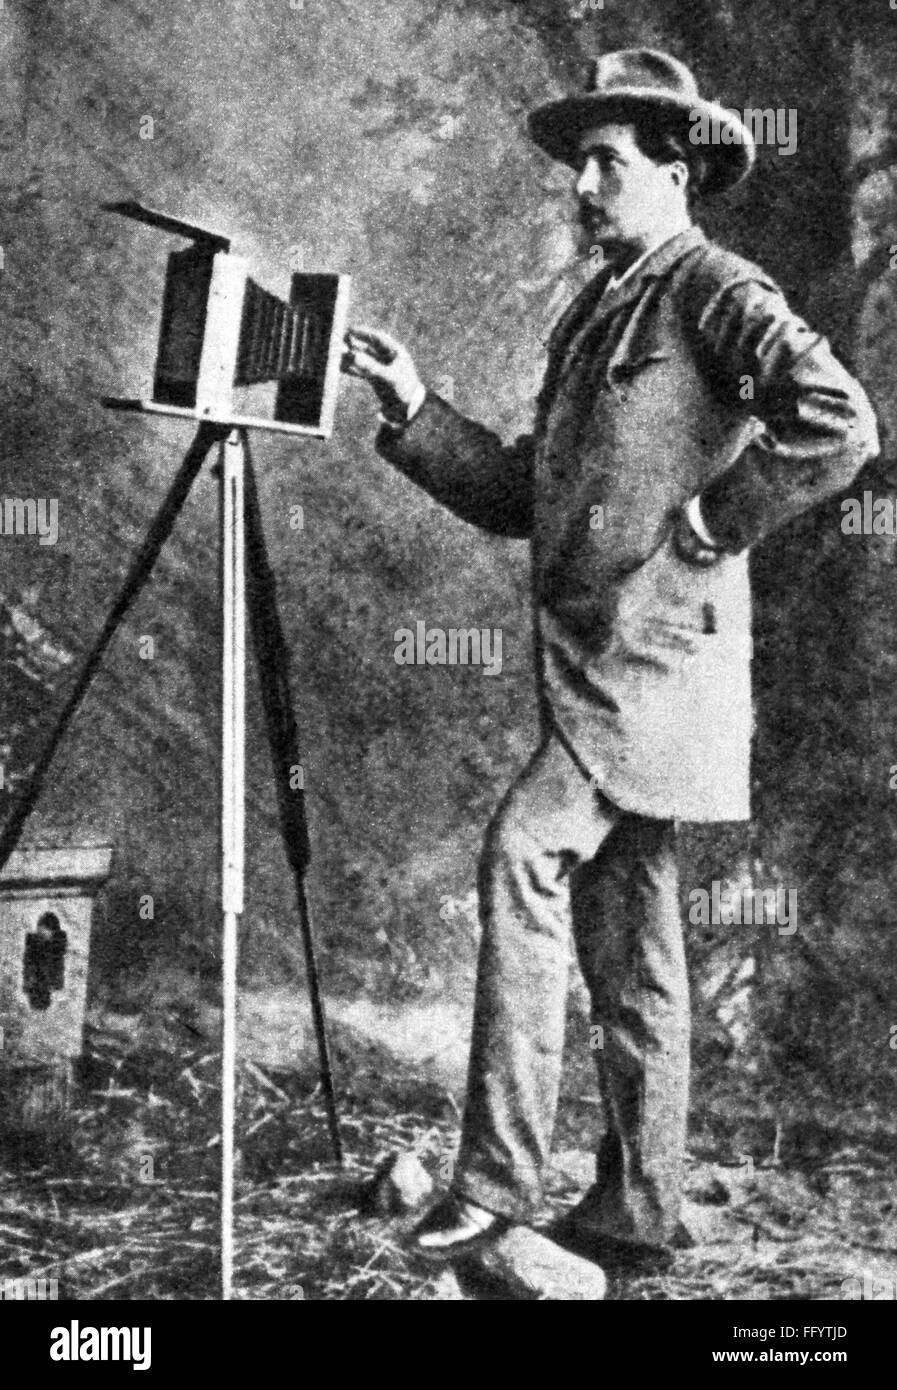 Fotografie, Fotograf, Fotograf in seinem Studio, 1885, Zusatz-Rechte-Clearences-nicht vorhanden Stockfoto